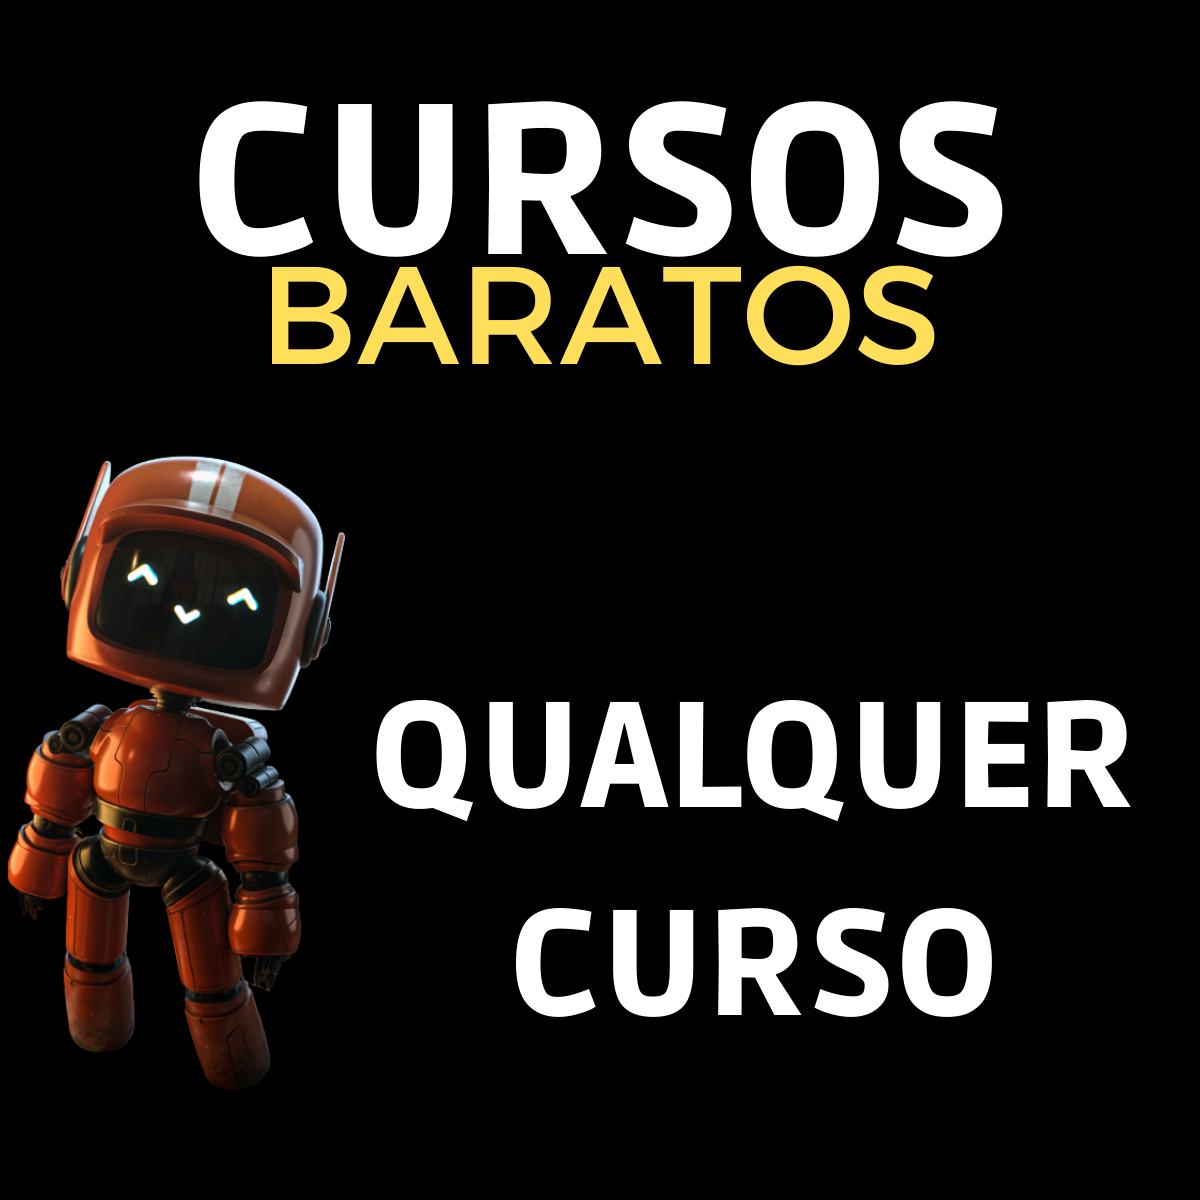 CURSOS BARATOS